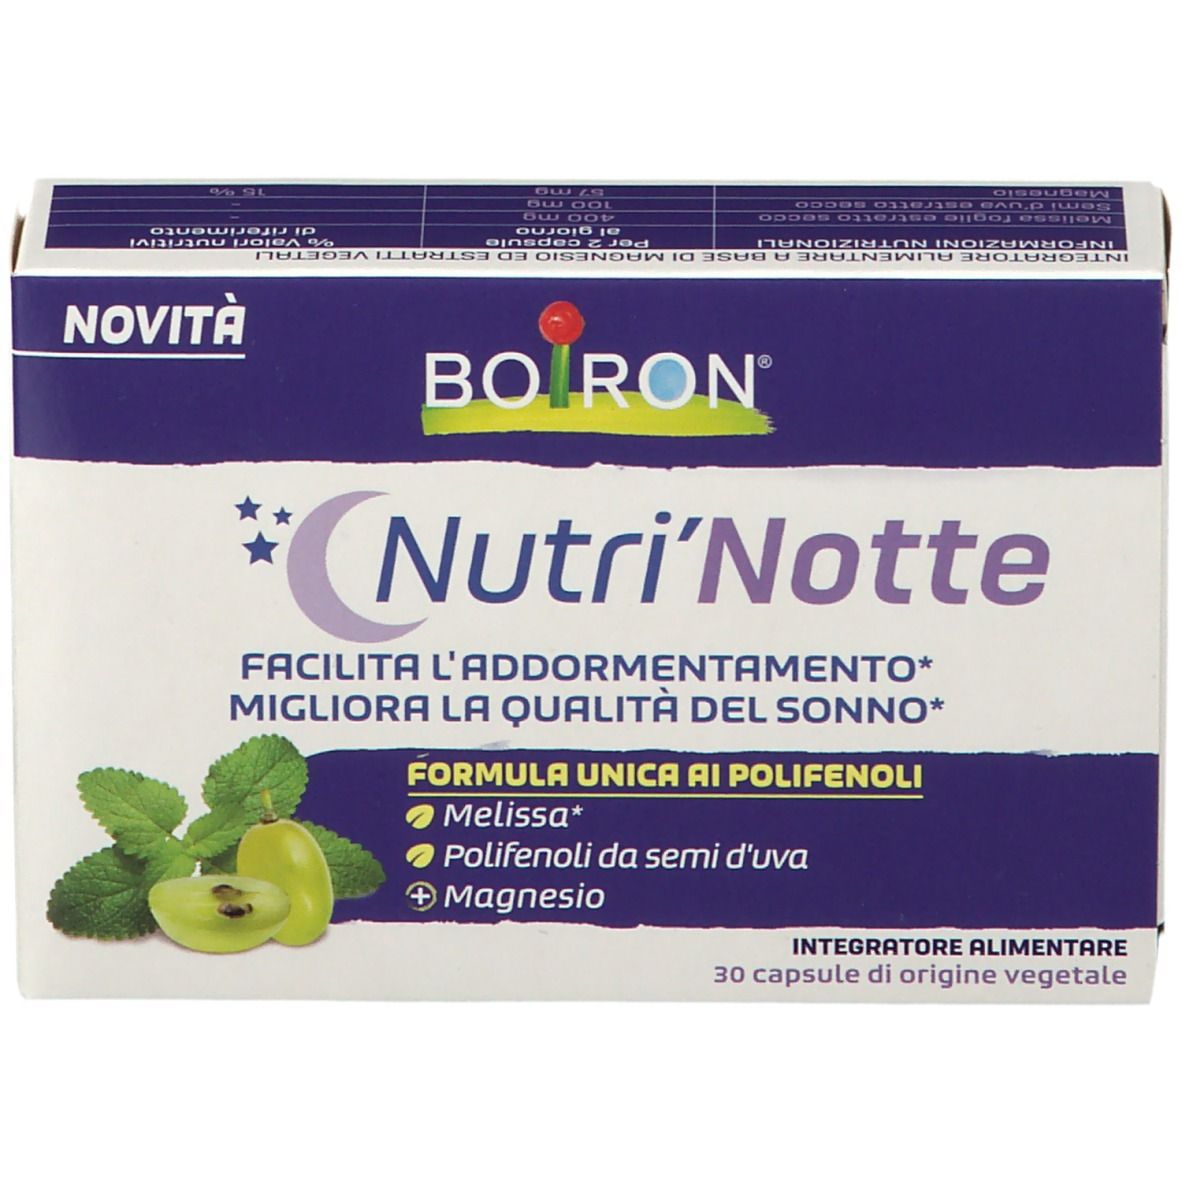 BOIRON® Nutri' Notte